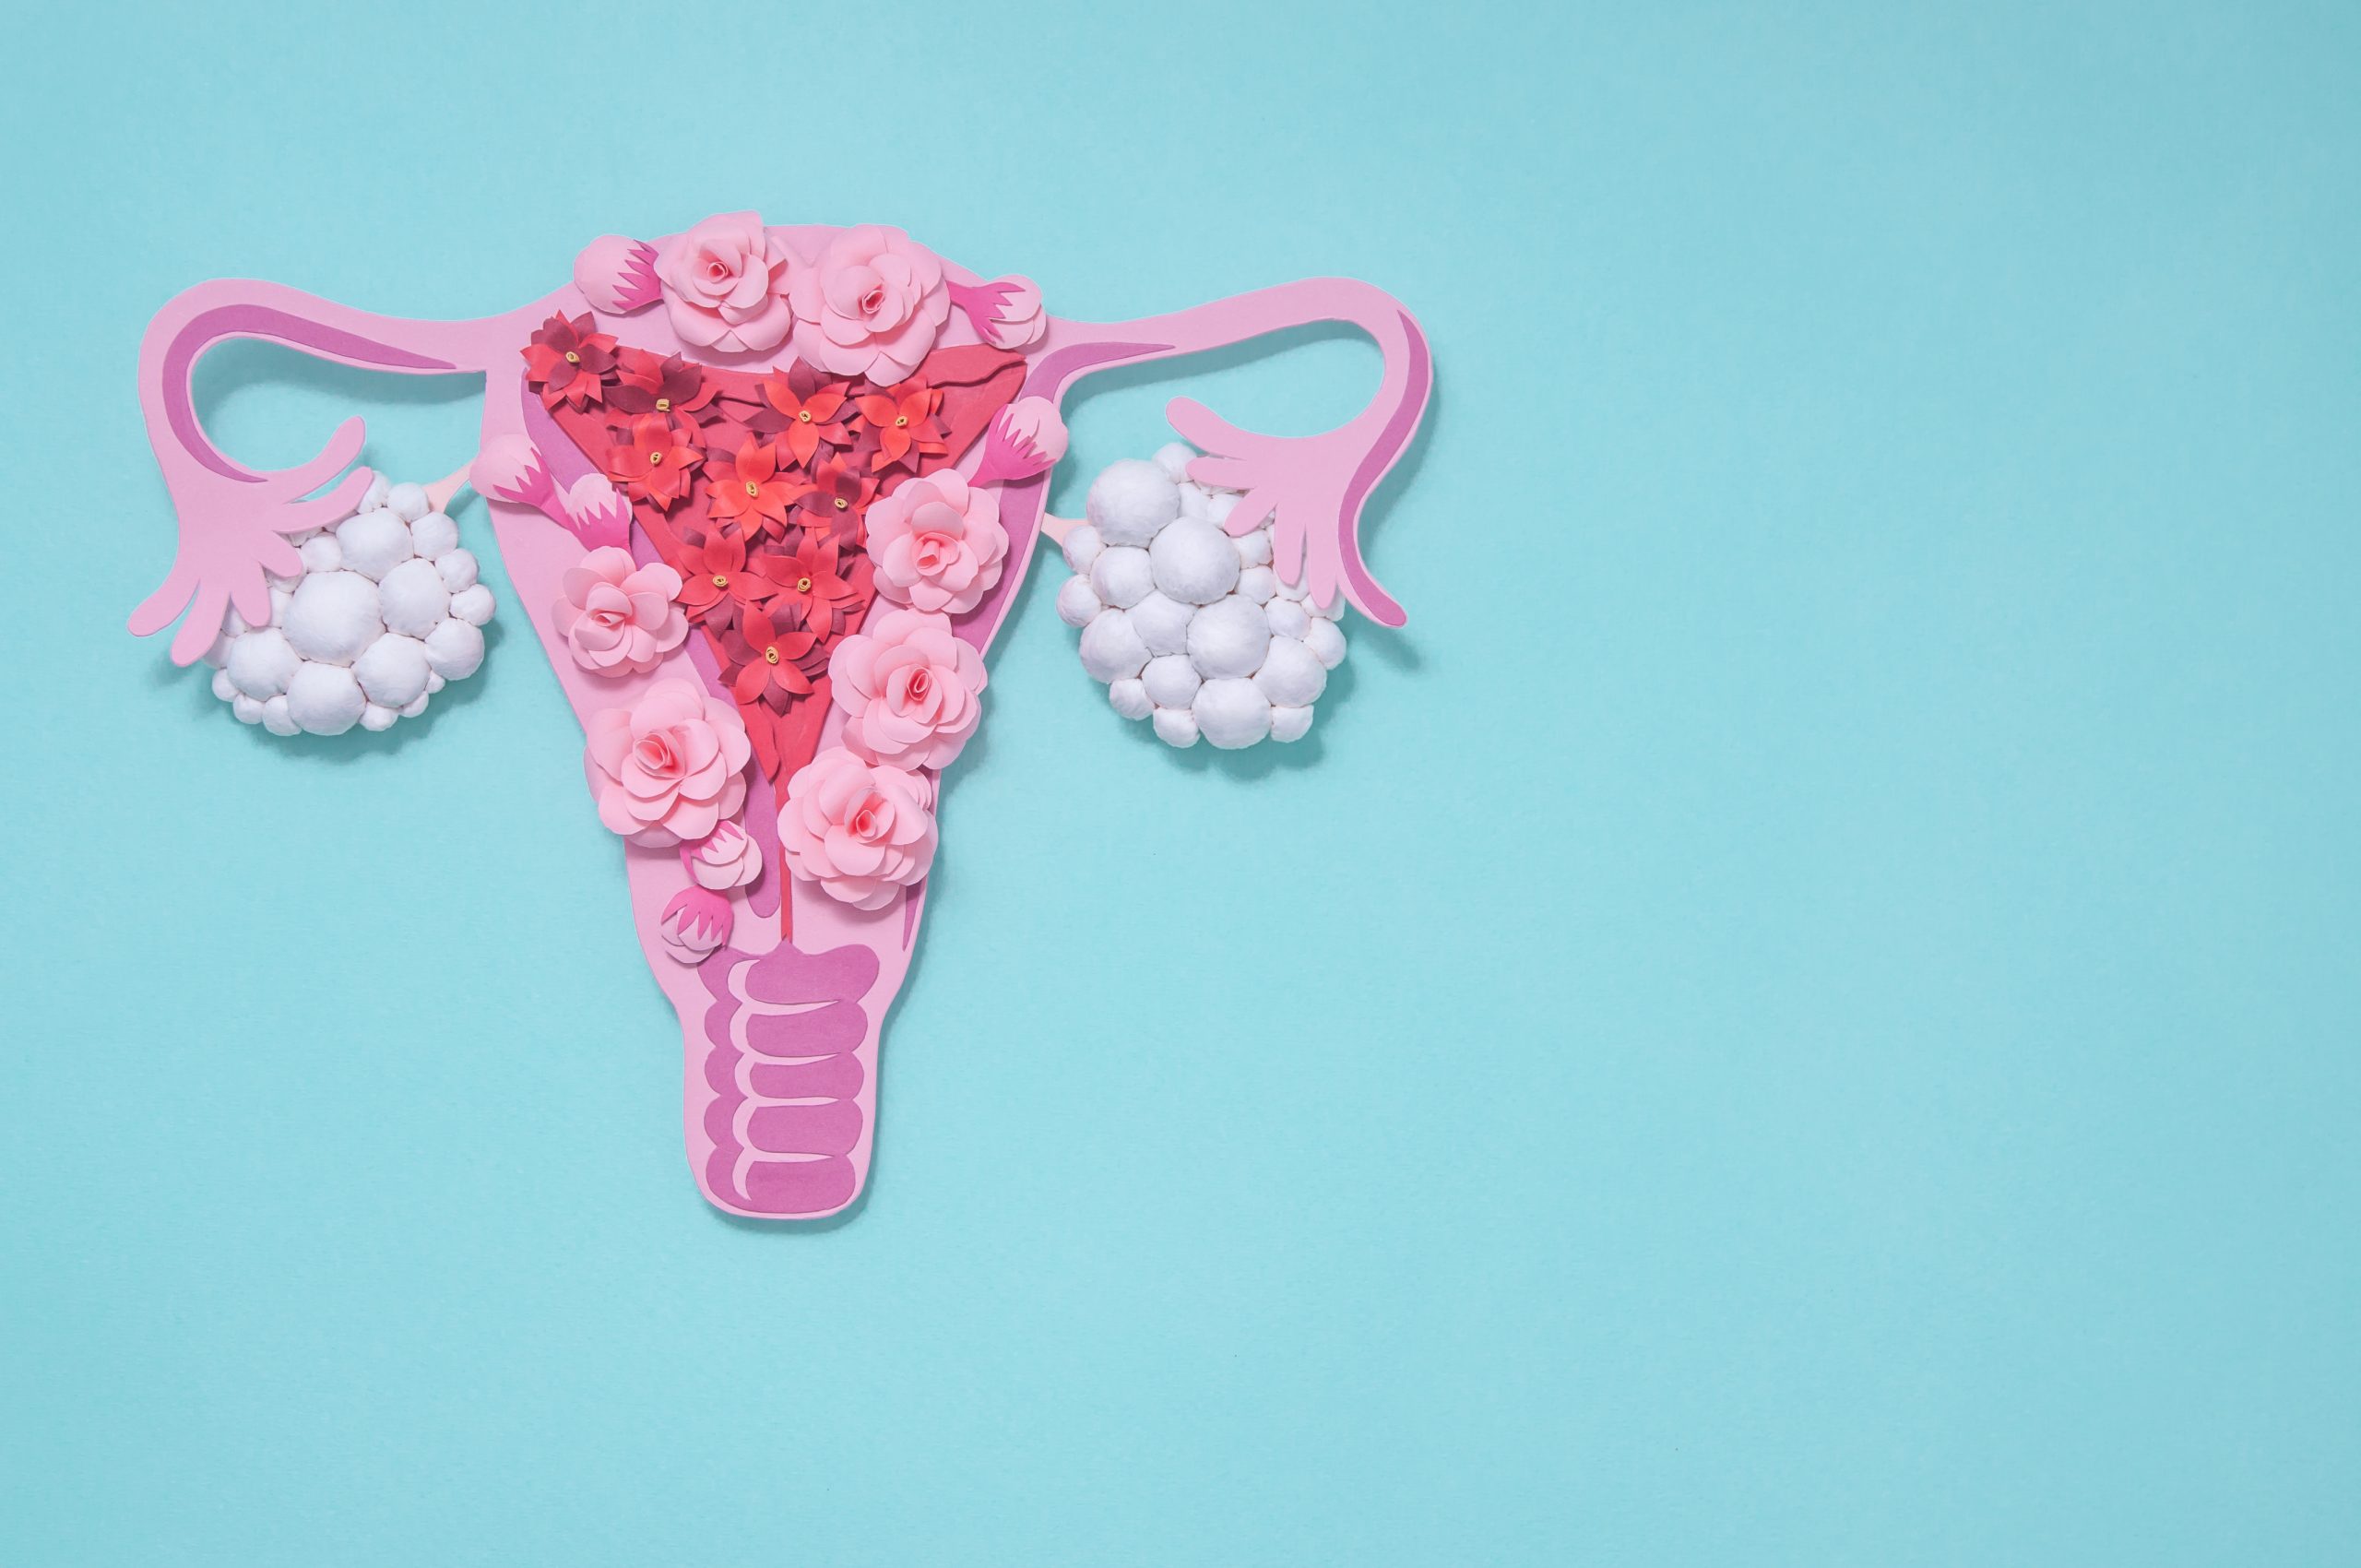 Maqueta rosa que representa el sistema reproductor femenino.